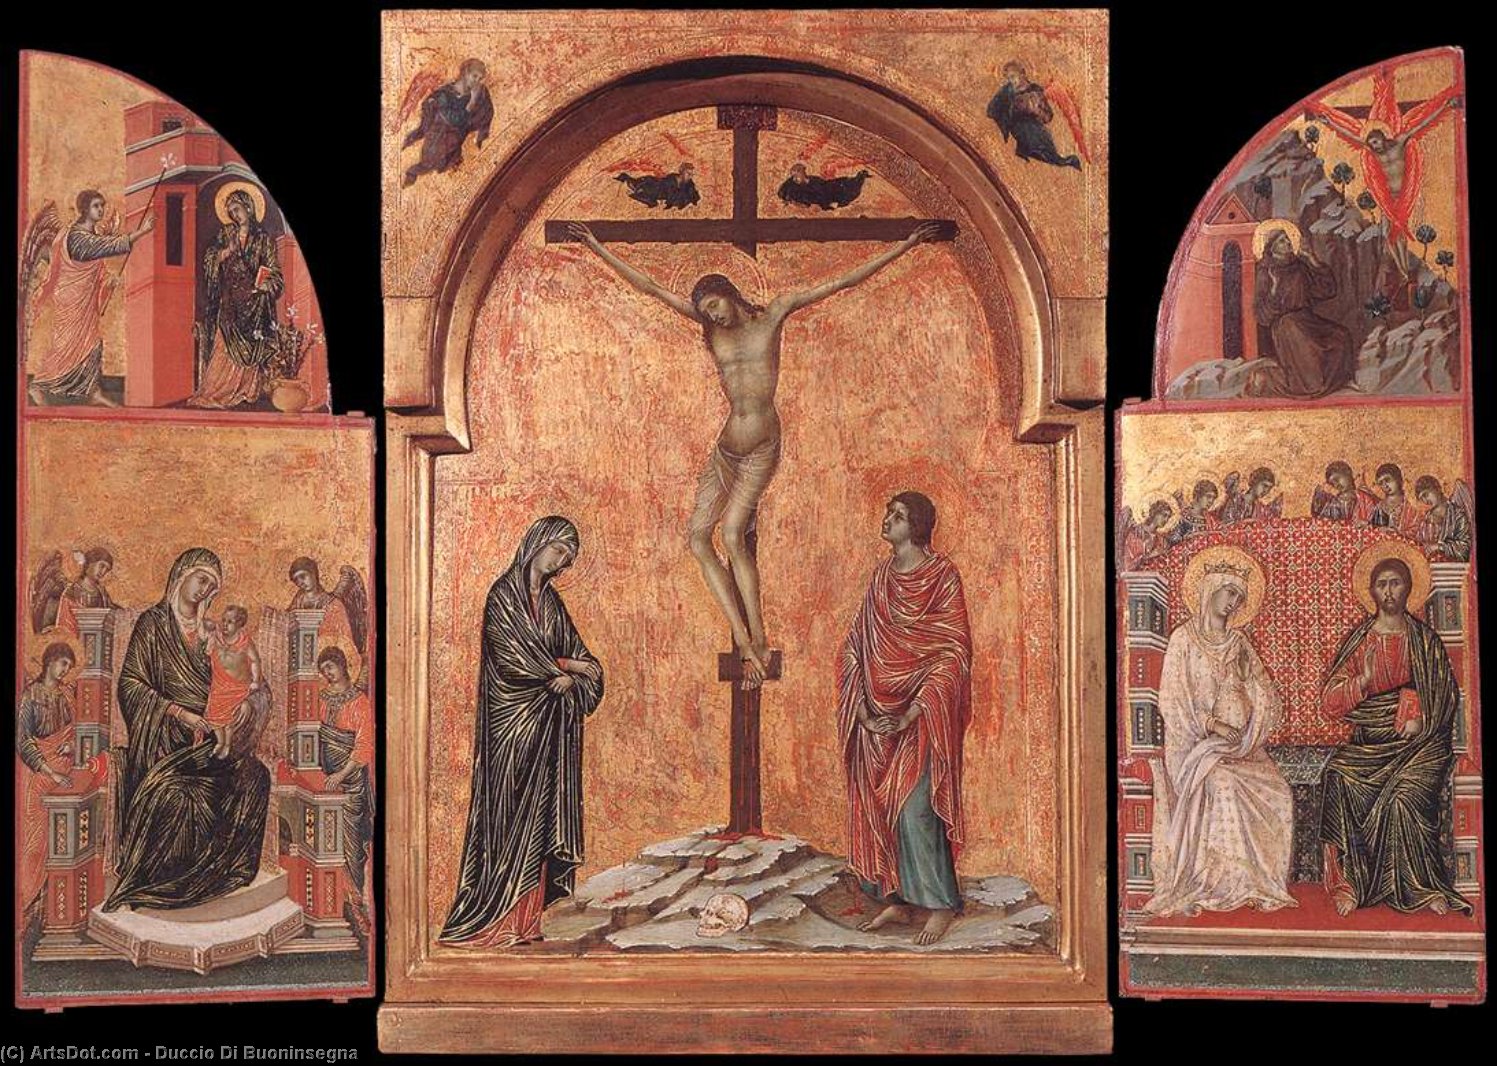 WikiOO.org - Encyclopedia of Fine Arts - Lukisan, Artwork Duccio Di Buoninsegna - Triptych